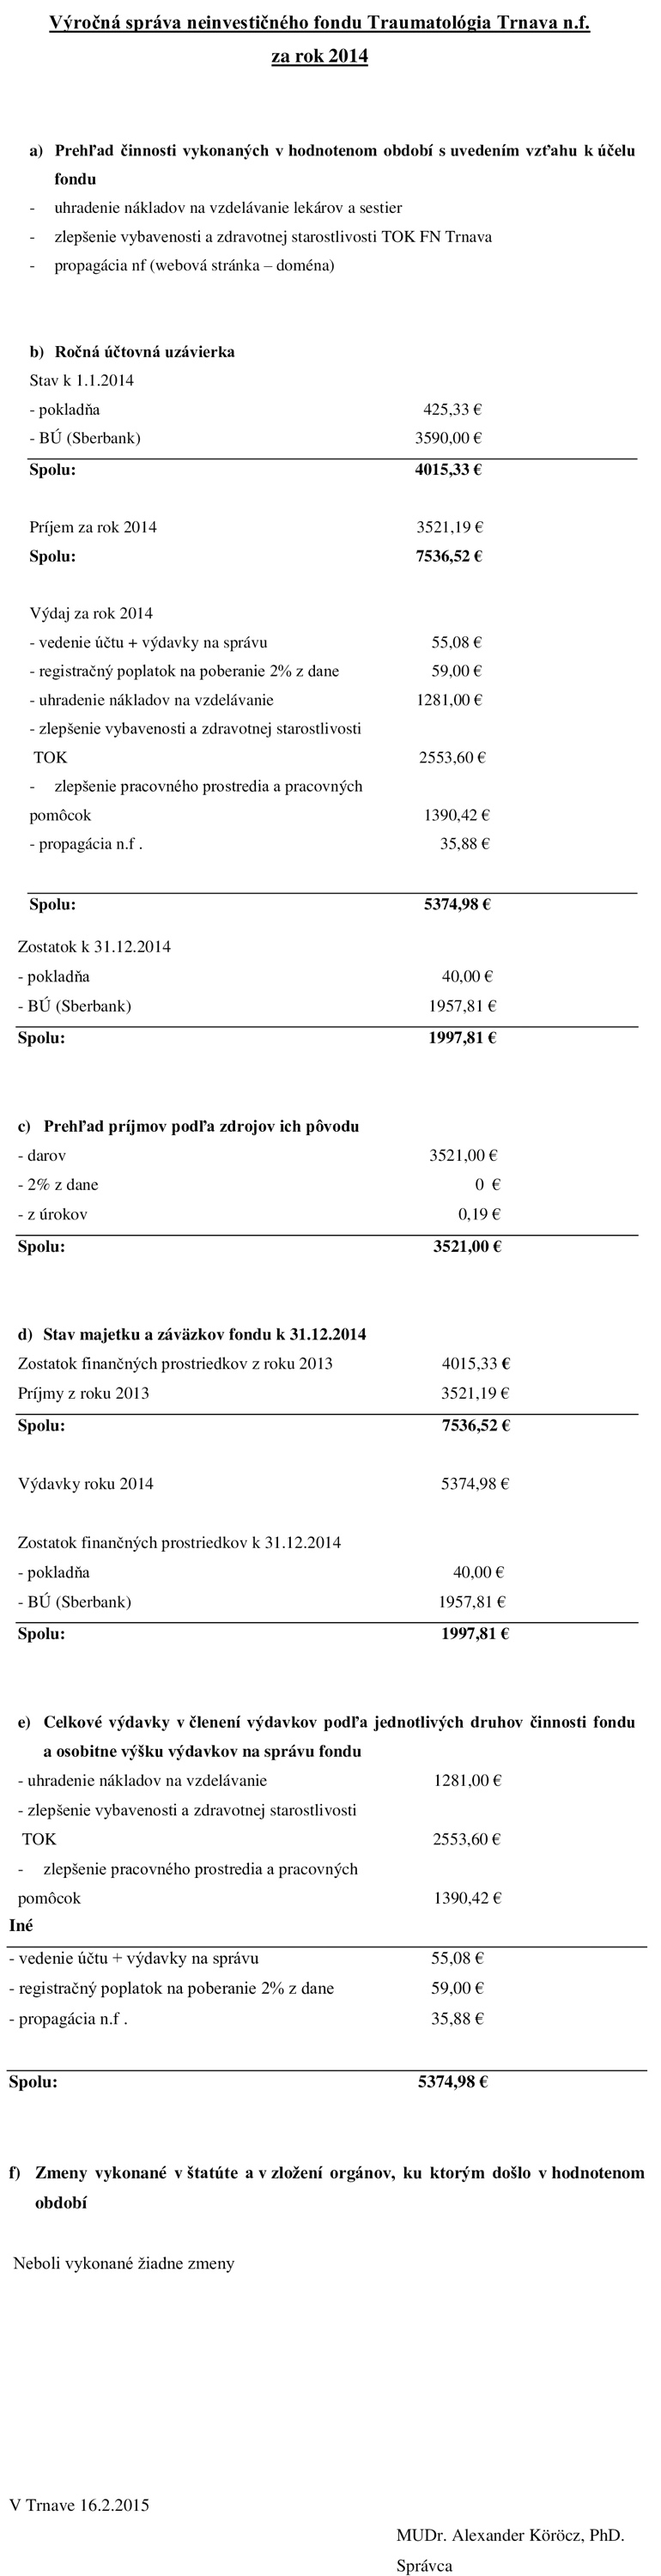 Výročná správa neinvestičného fondu Traumatológia Trnava, n.f. za rok 2013